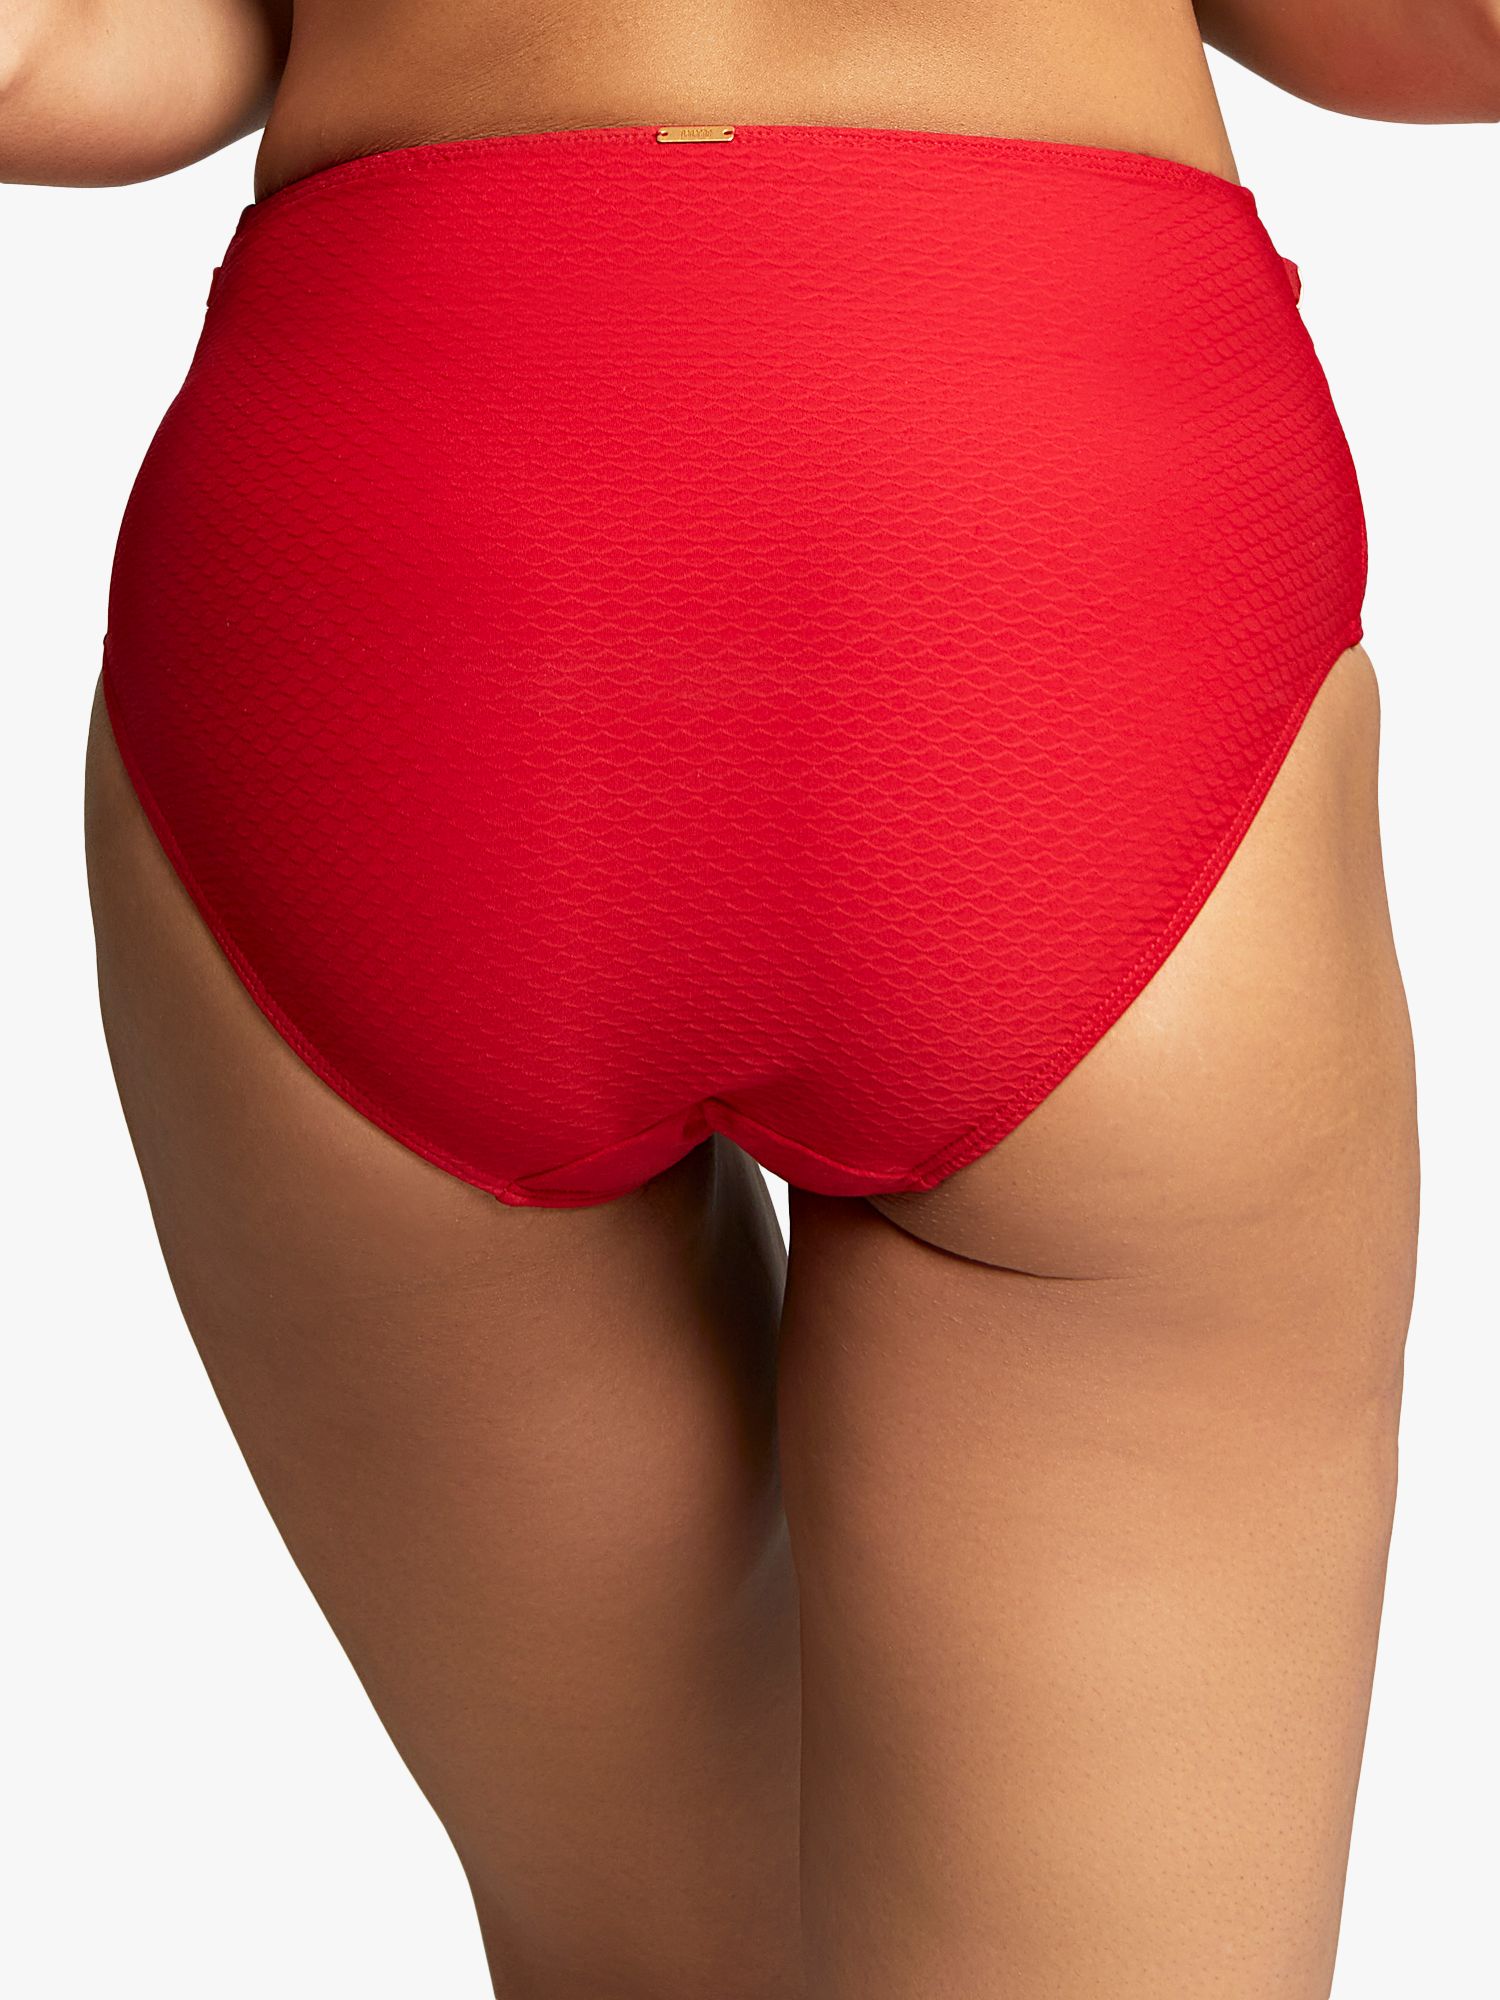 Panache Marianna High Waist Bikini Bottoms, Crimson, 8